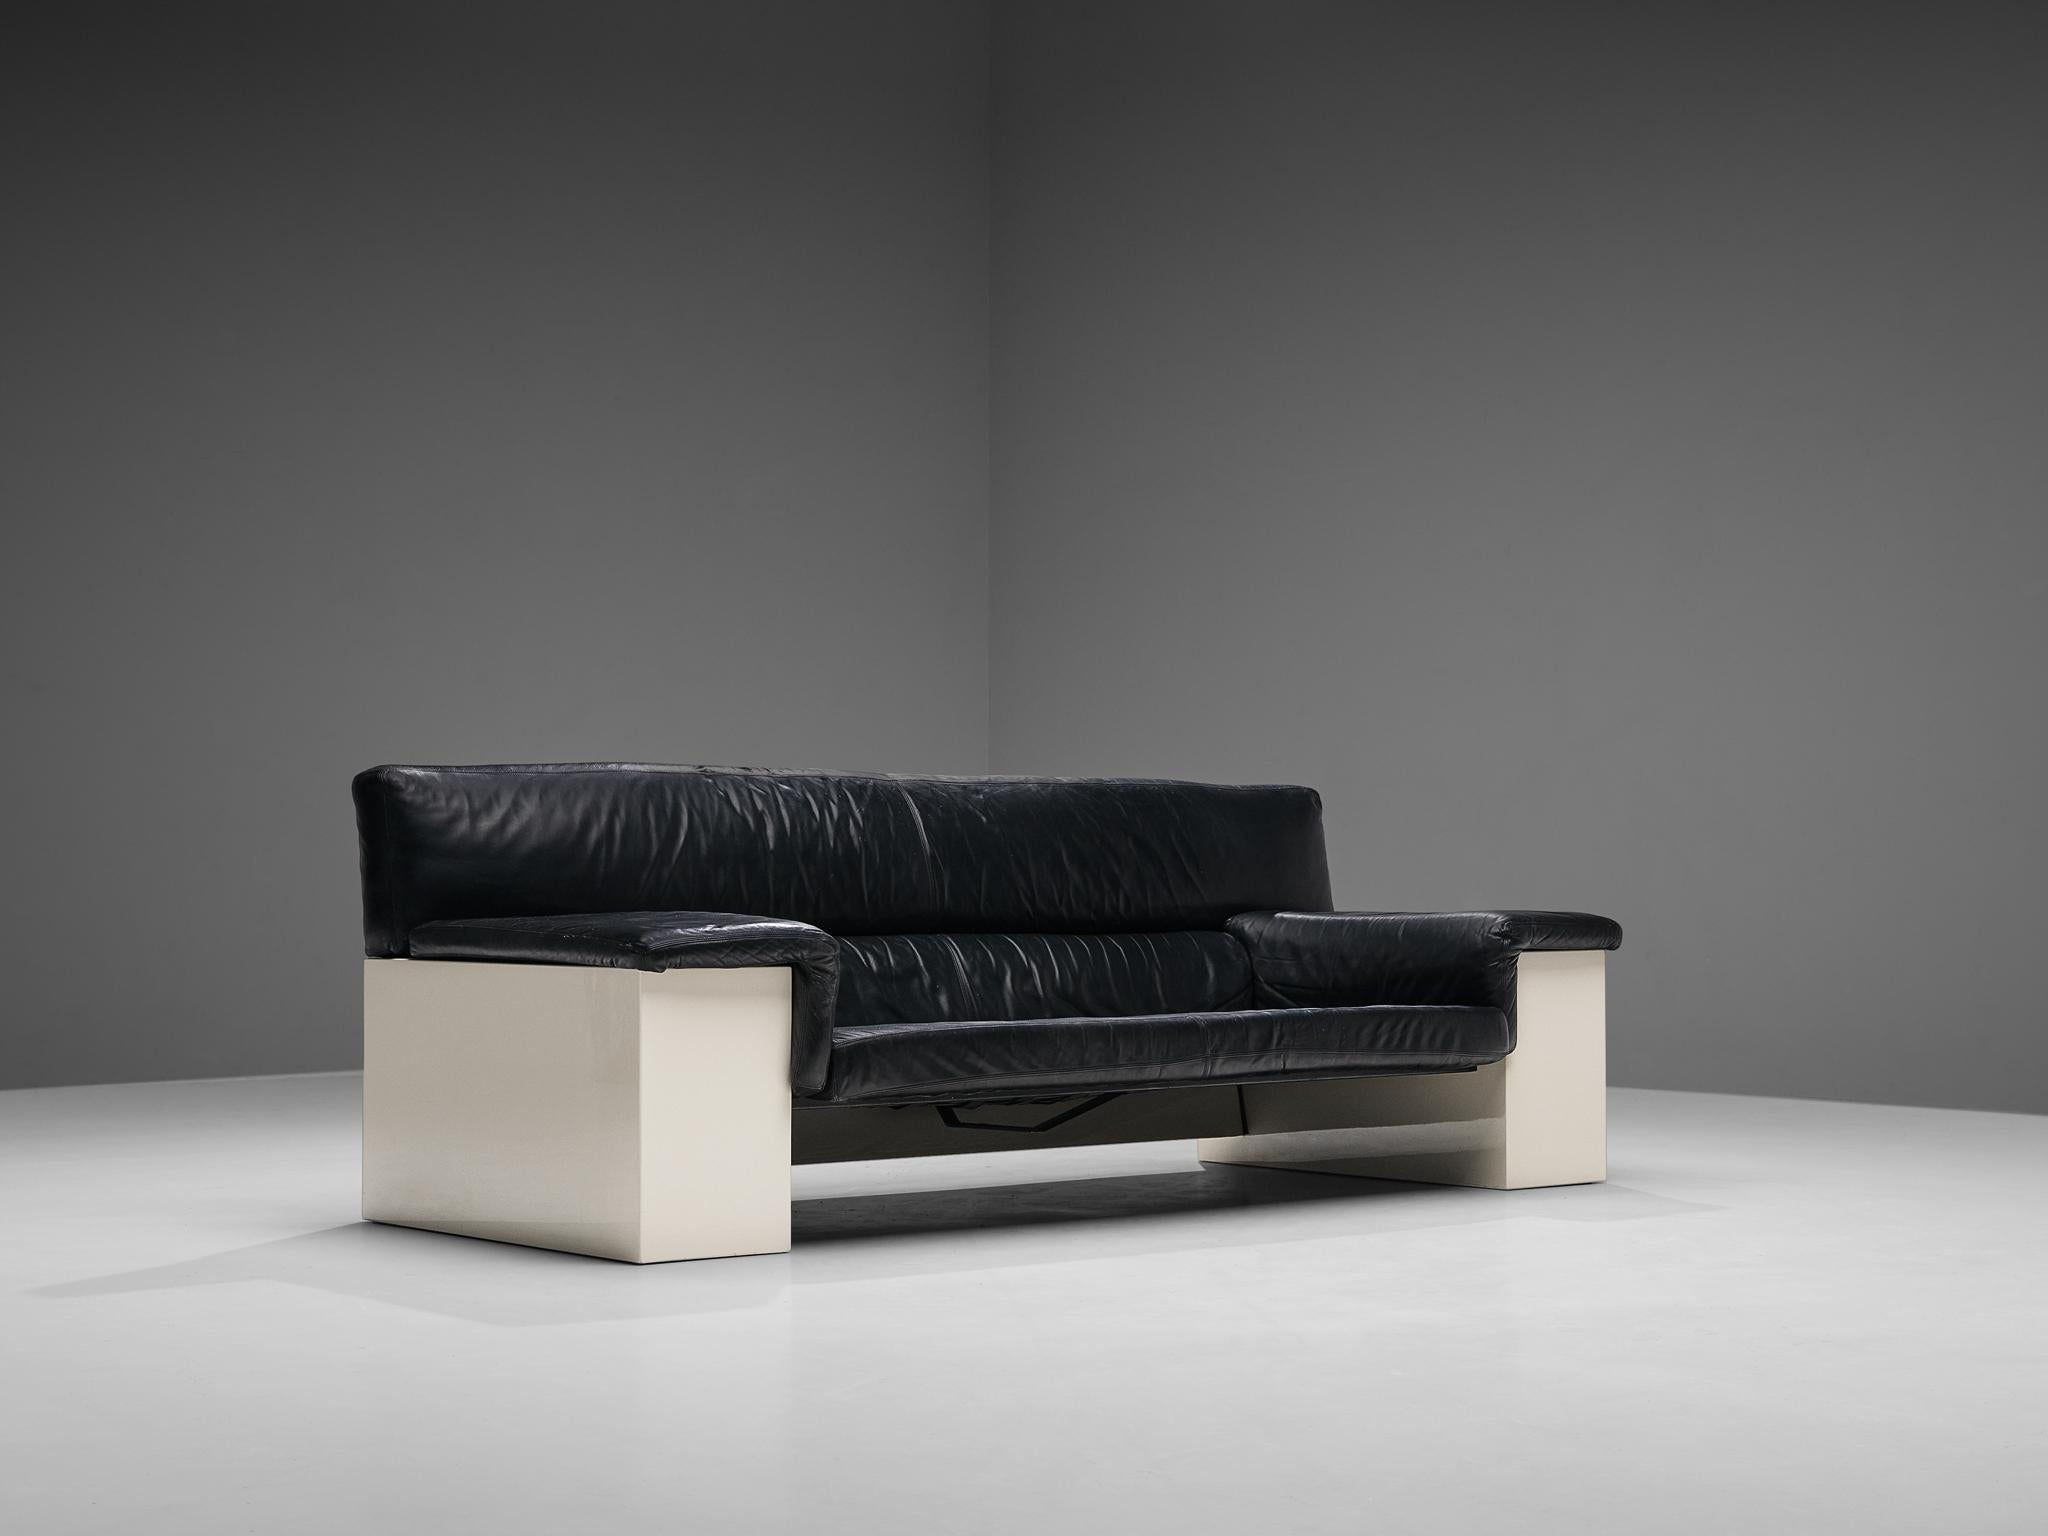 CINI pour Knoll, canapé trois places, modèle 'Brigadier', cuir, bois laqué, Italie, conçu en 1976. 

Modèle de canapé architectural 